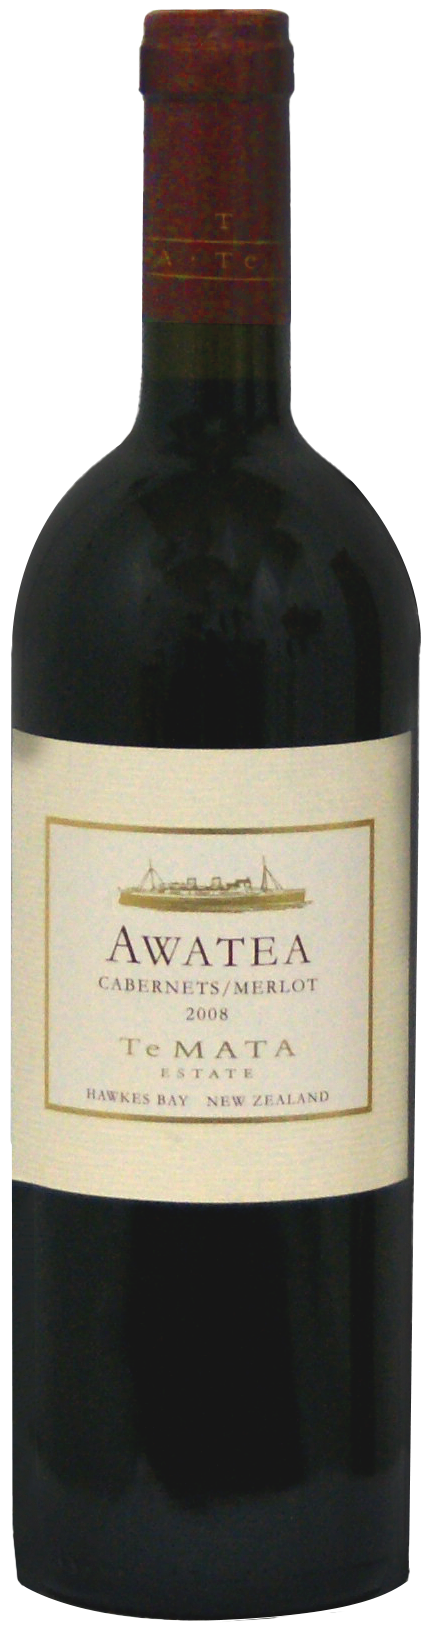 Awatea-2008